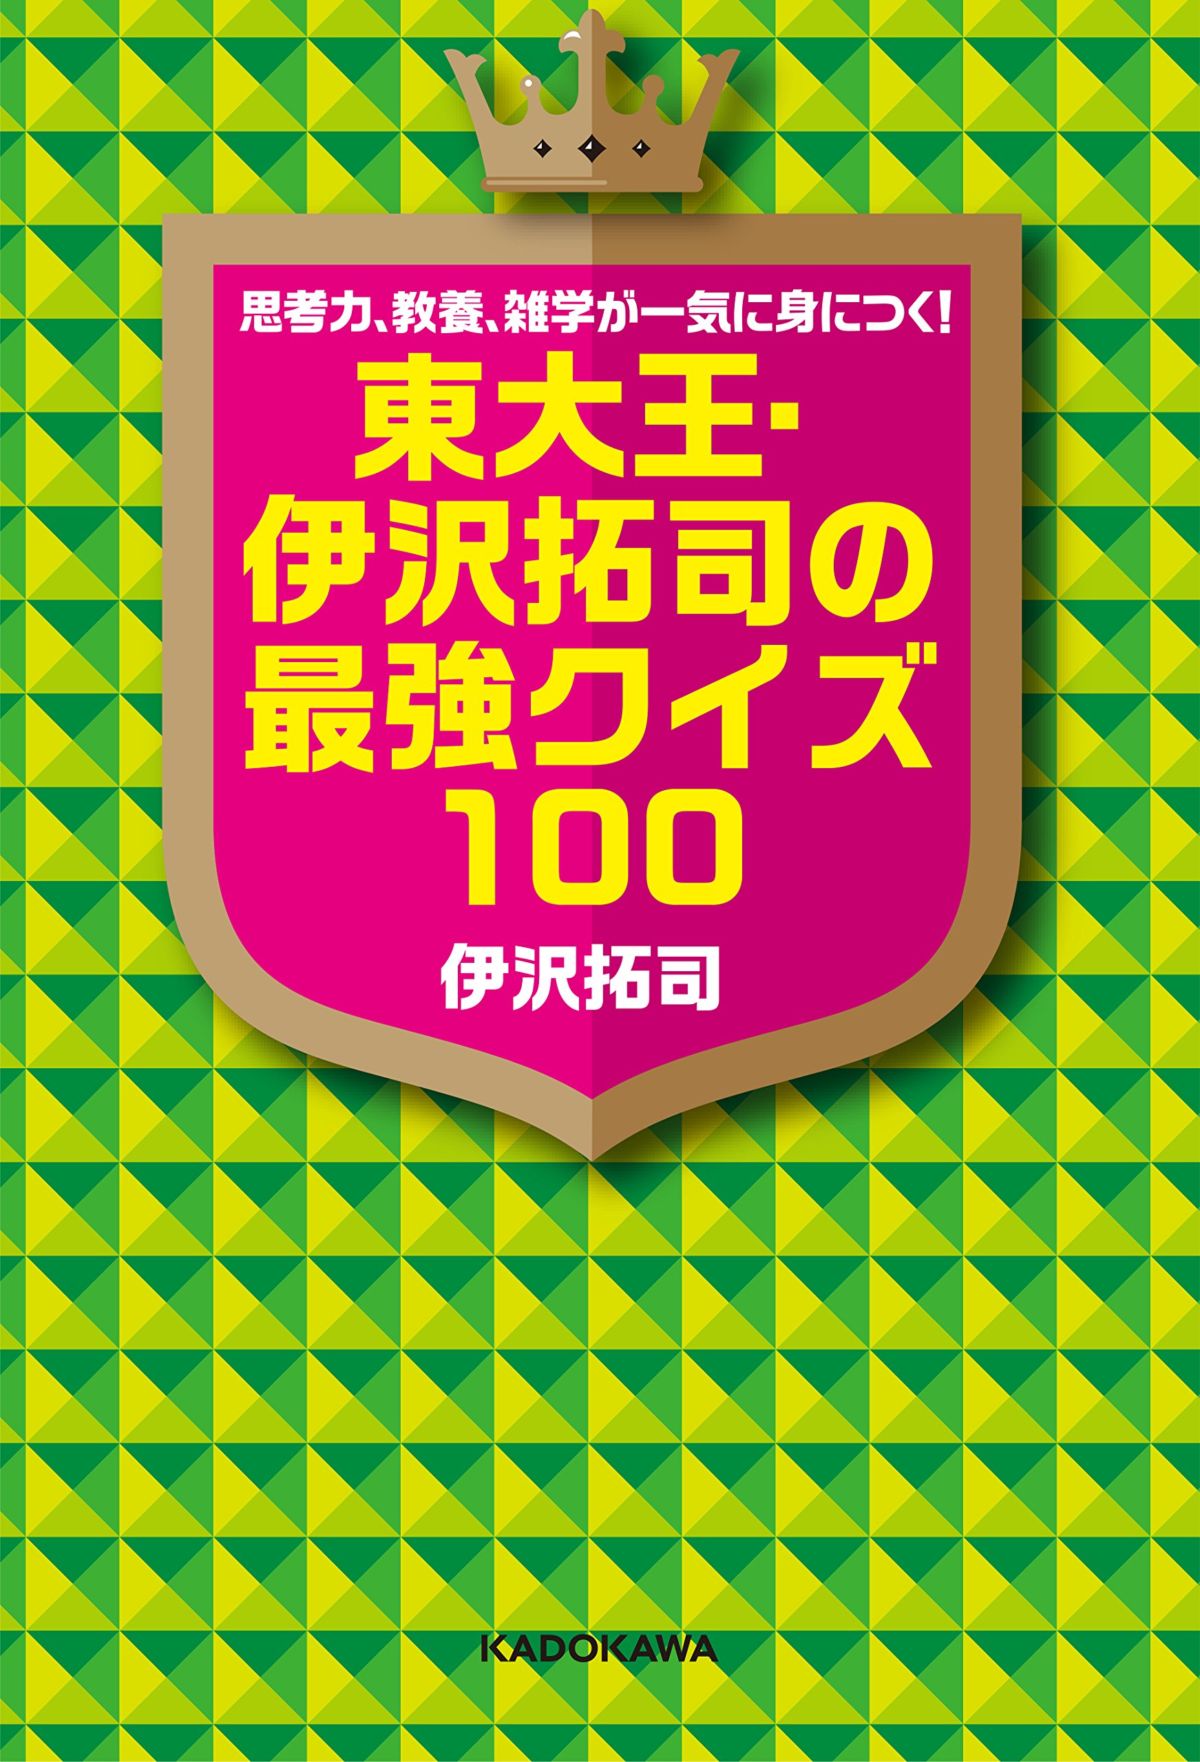 東大王 伊沢拓司が考える 日本のクイズ文化 最強クイズ100執筆秘話 インタビュー 3 ダ ヴィンチweb